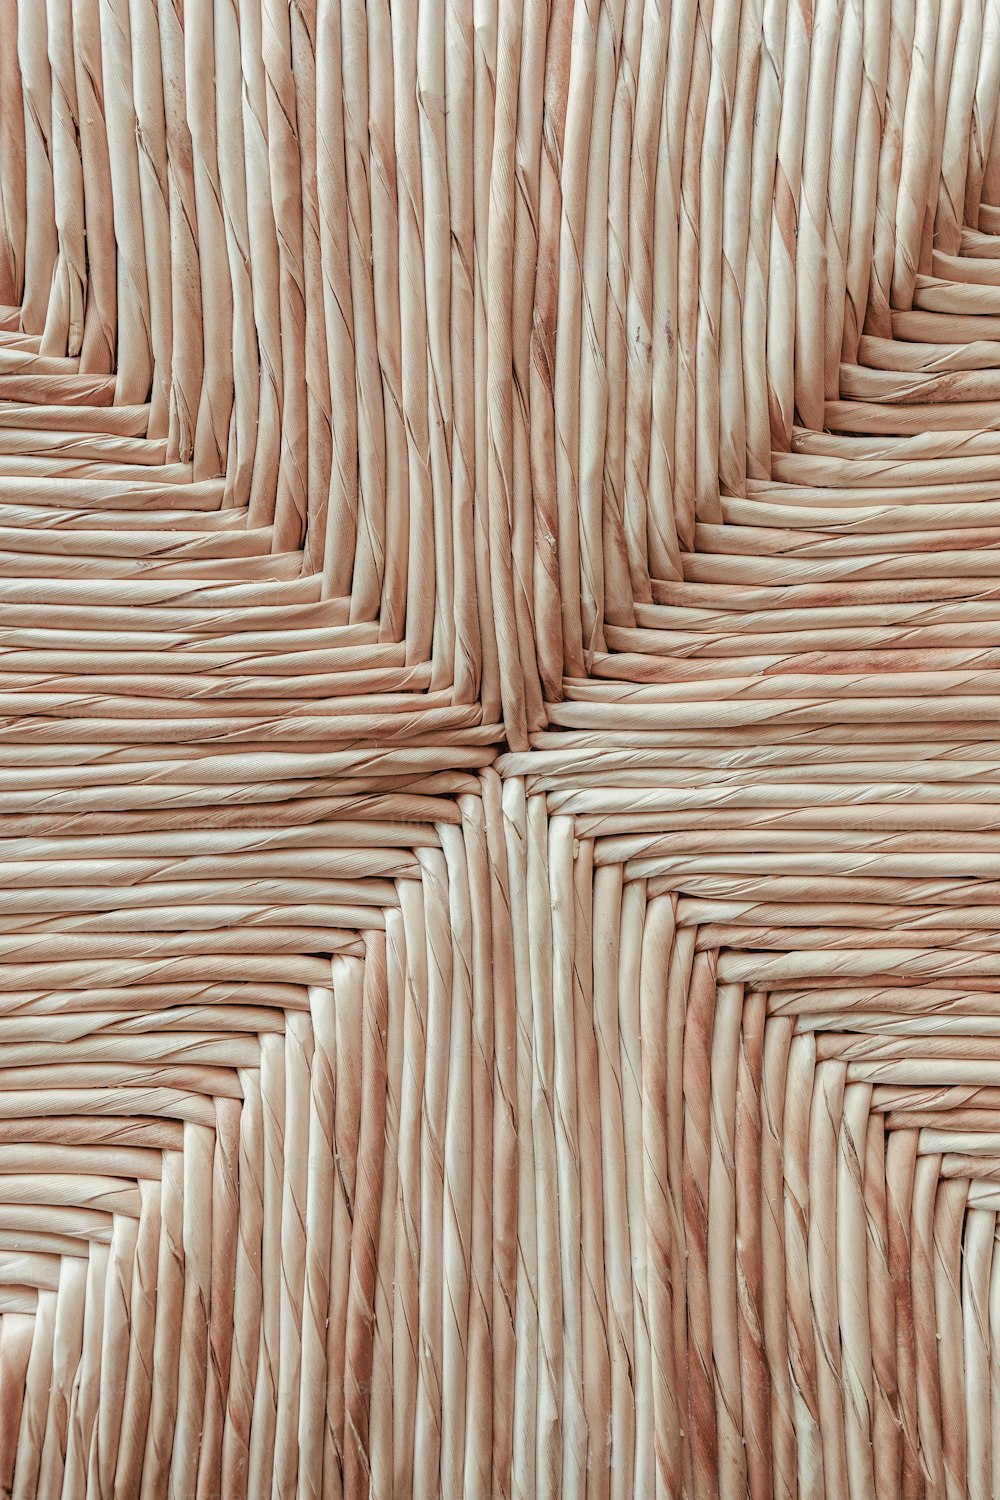 Una vista de cerca de un material tejido